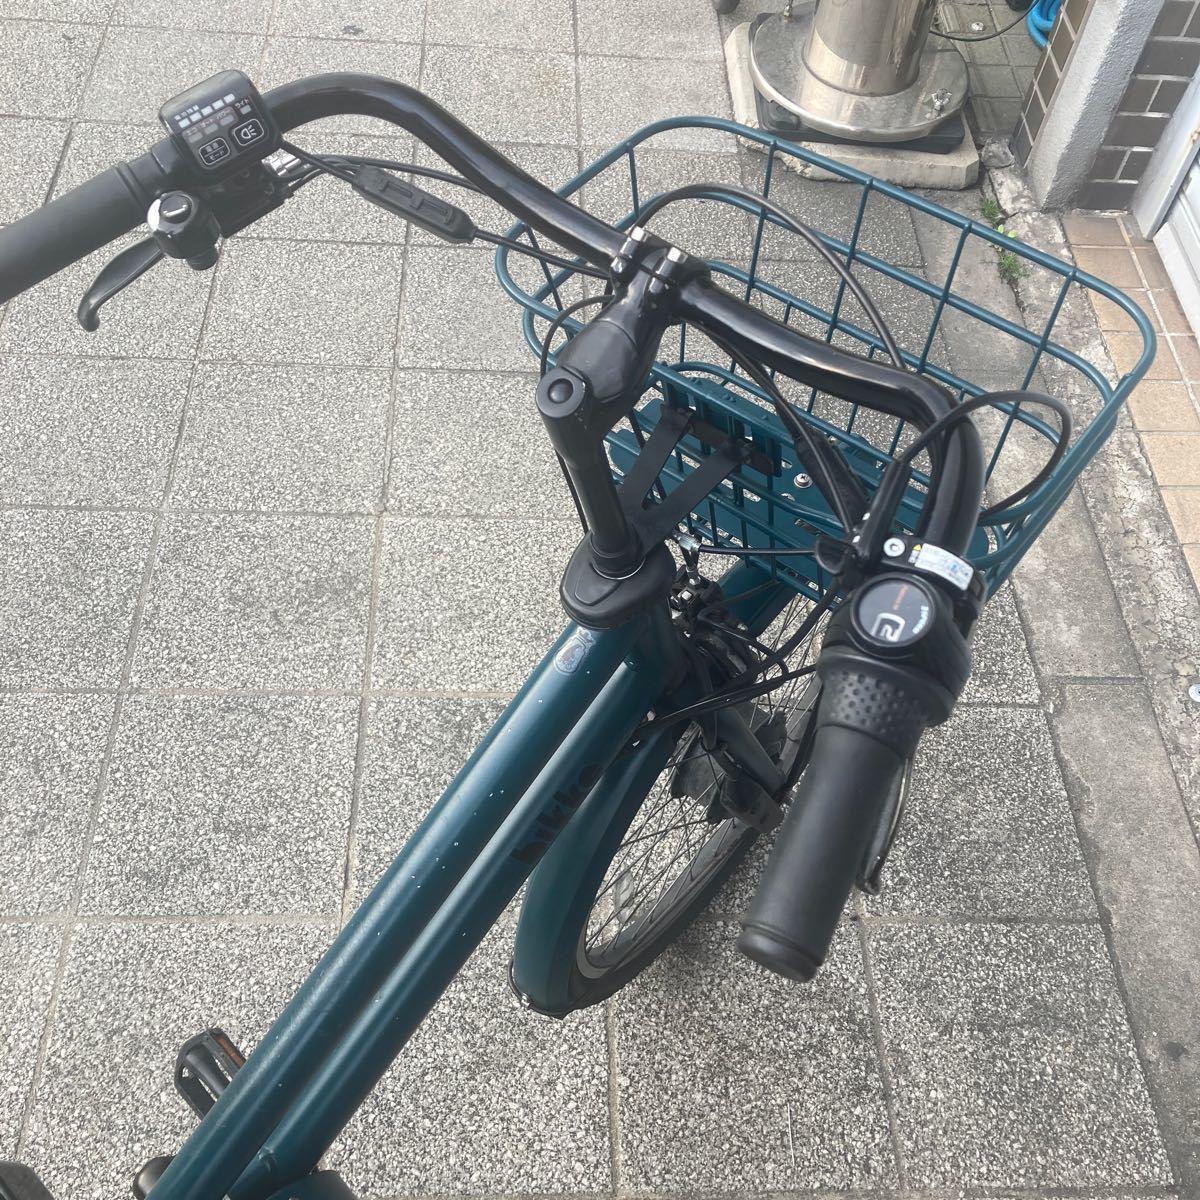  Osaka город б/у электромобиль 24 дюймовый Bridgestone bikebikke самовывоз только!